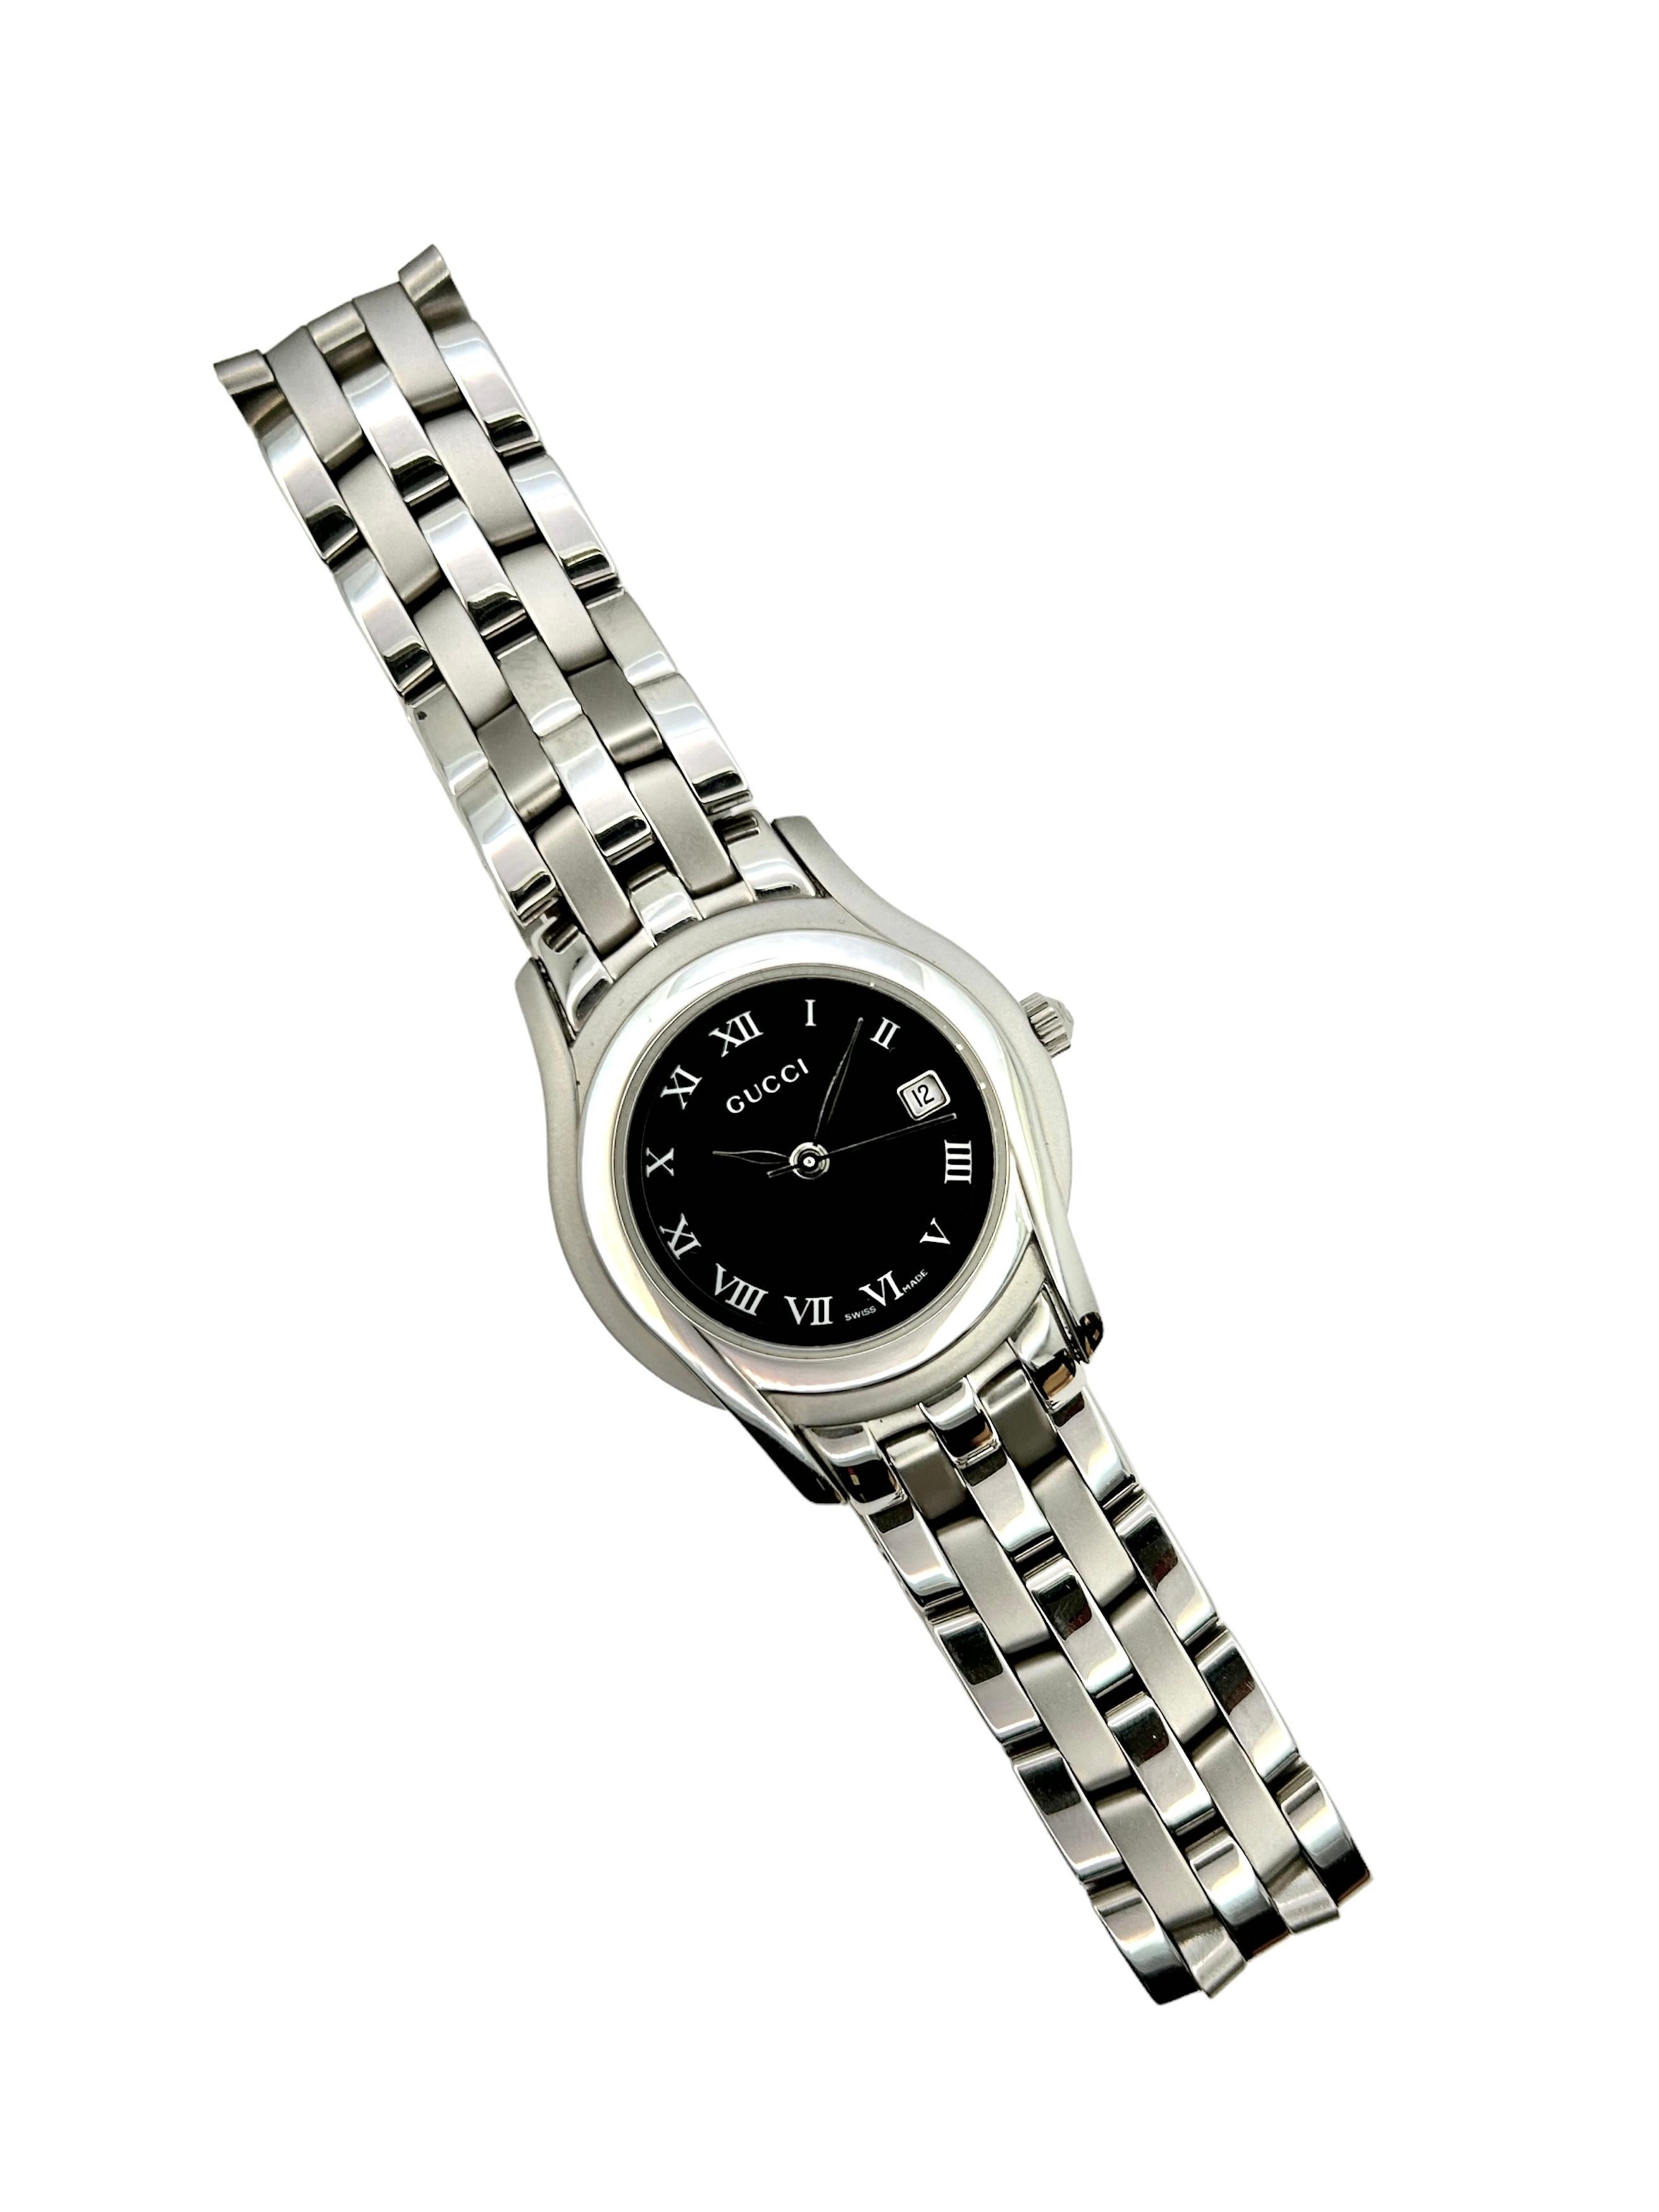 Nouvelle montre à quartz Gucci pour femme en acier inoxydable fabriqué en Suisse.
La montre n'a jamais été portée et provient d'un vendeur italien agréé.

Accompagné d'une boîte et de la garantie internationale Gucci.
Il est également possible de